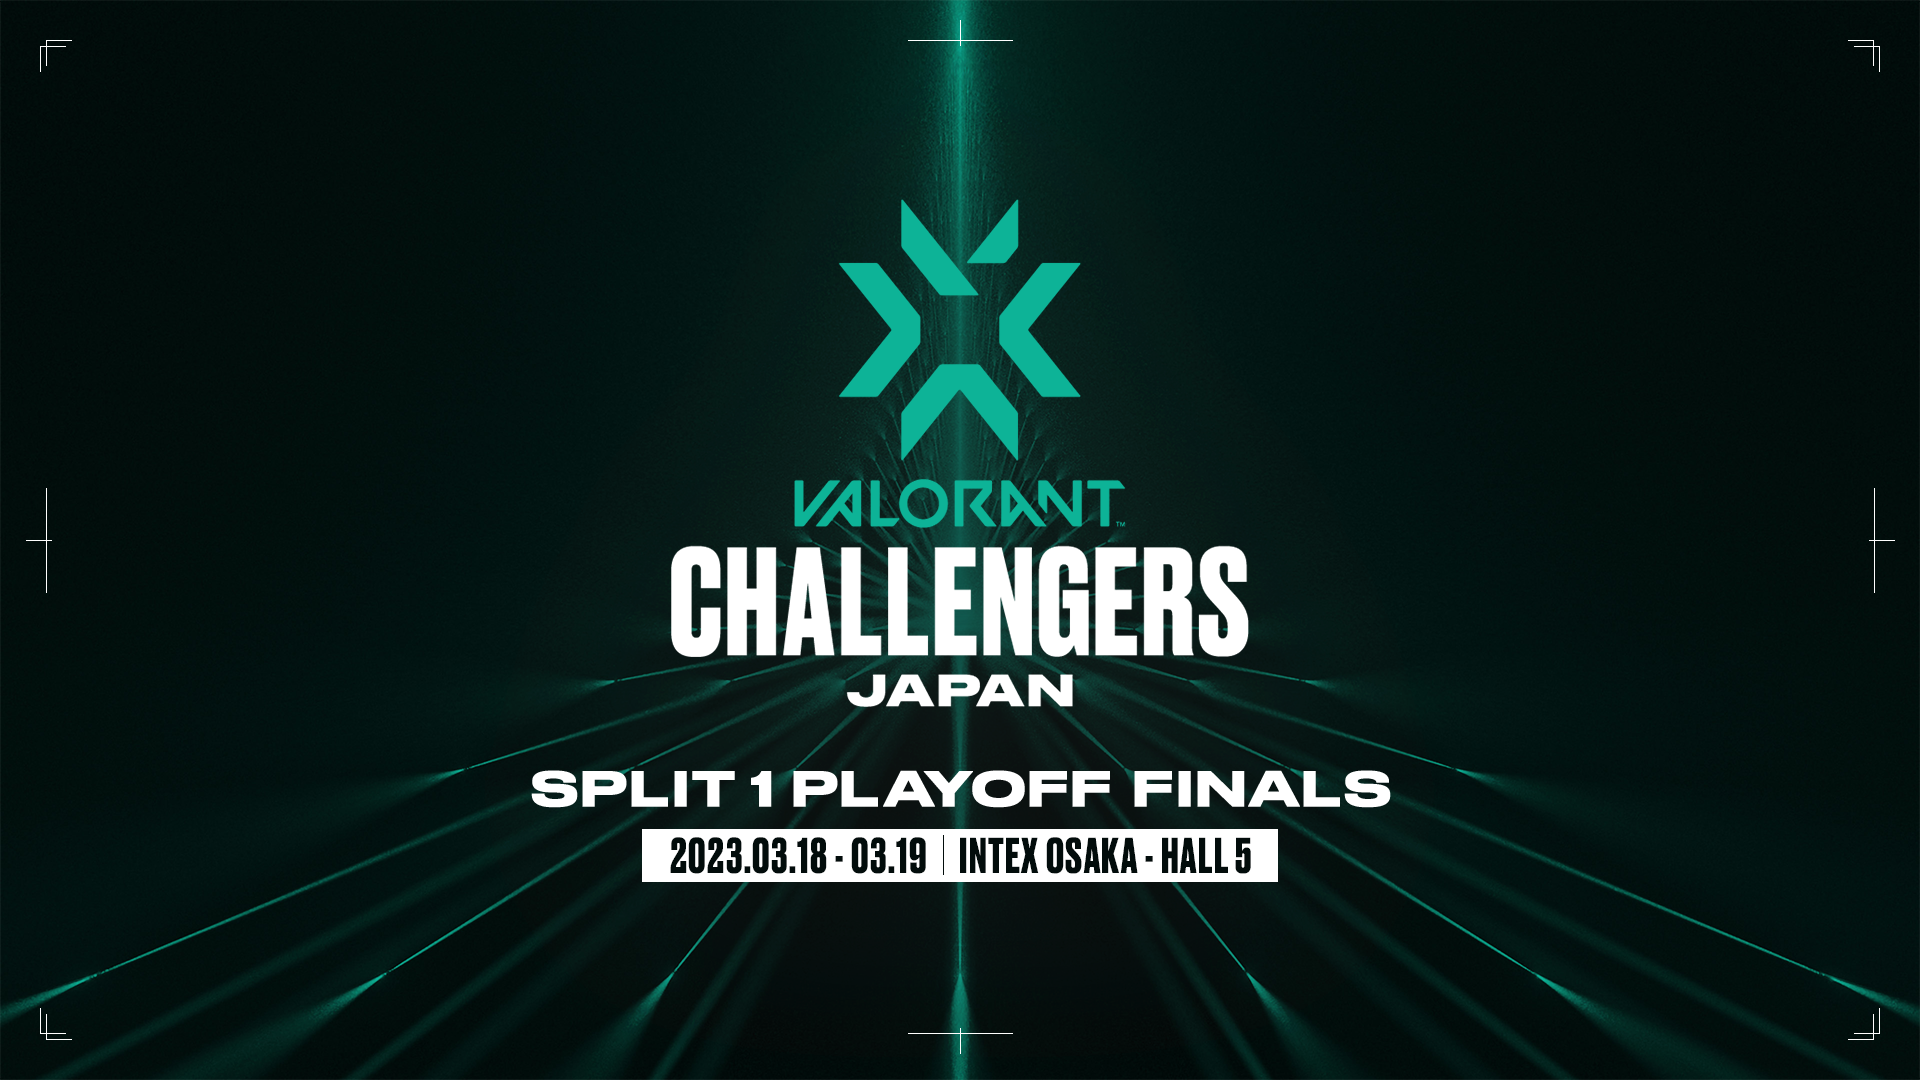 【VALORANT Challengers Japan Split 1 Playoff Finals】試合結果